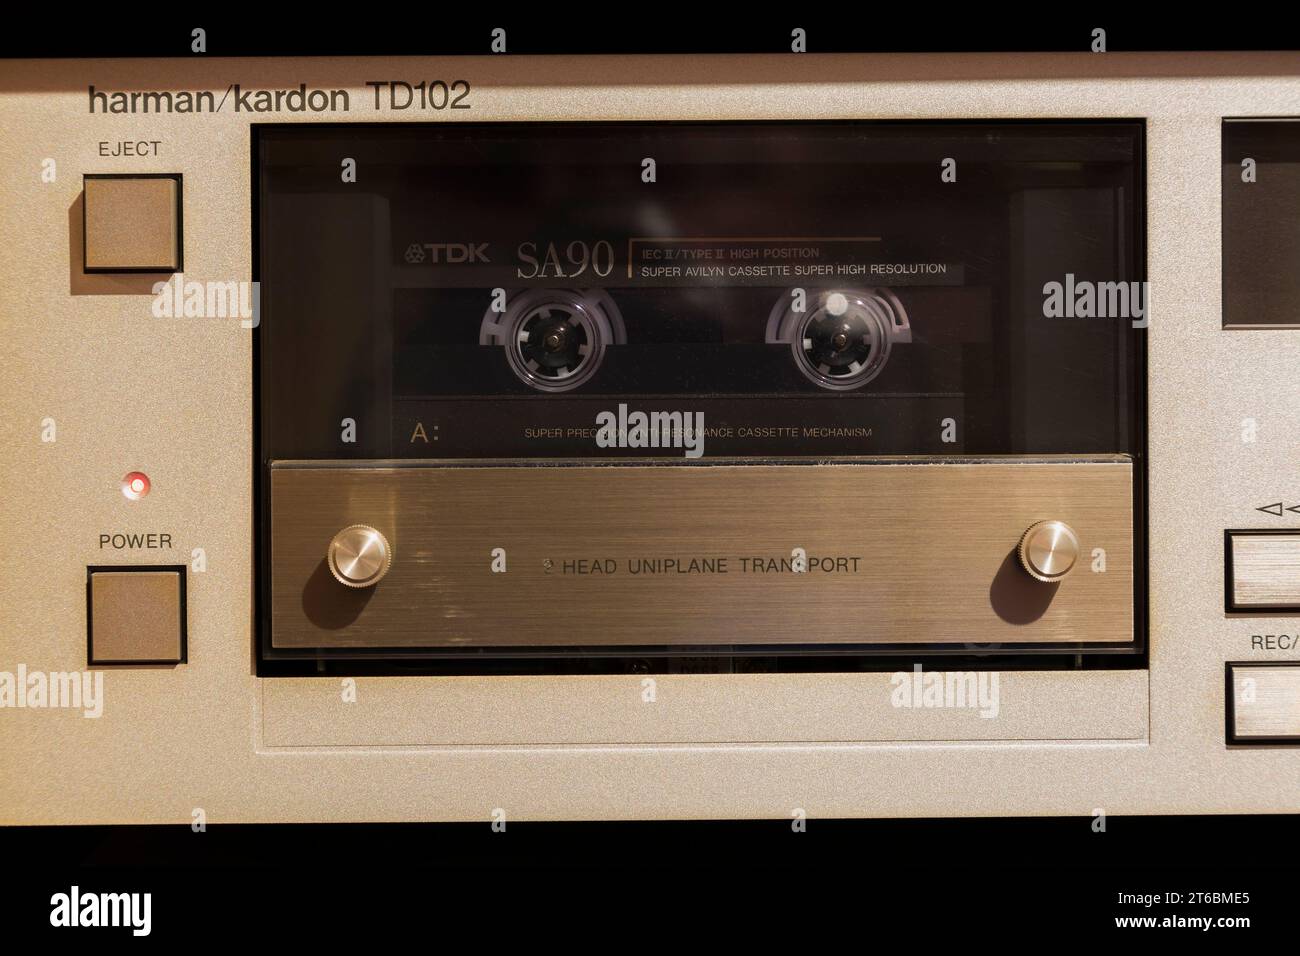 Harmon Kardon TD102 Cassette Deck with inserted TDK SA90 cassette. Stock Photo